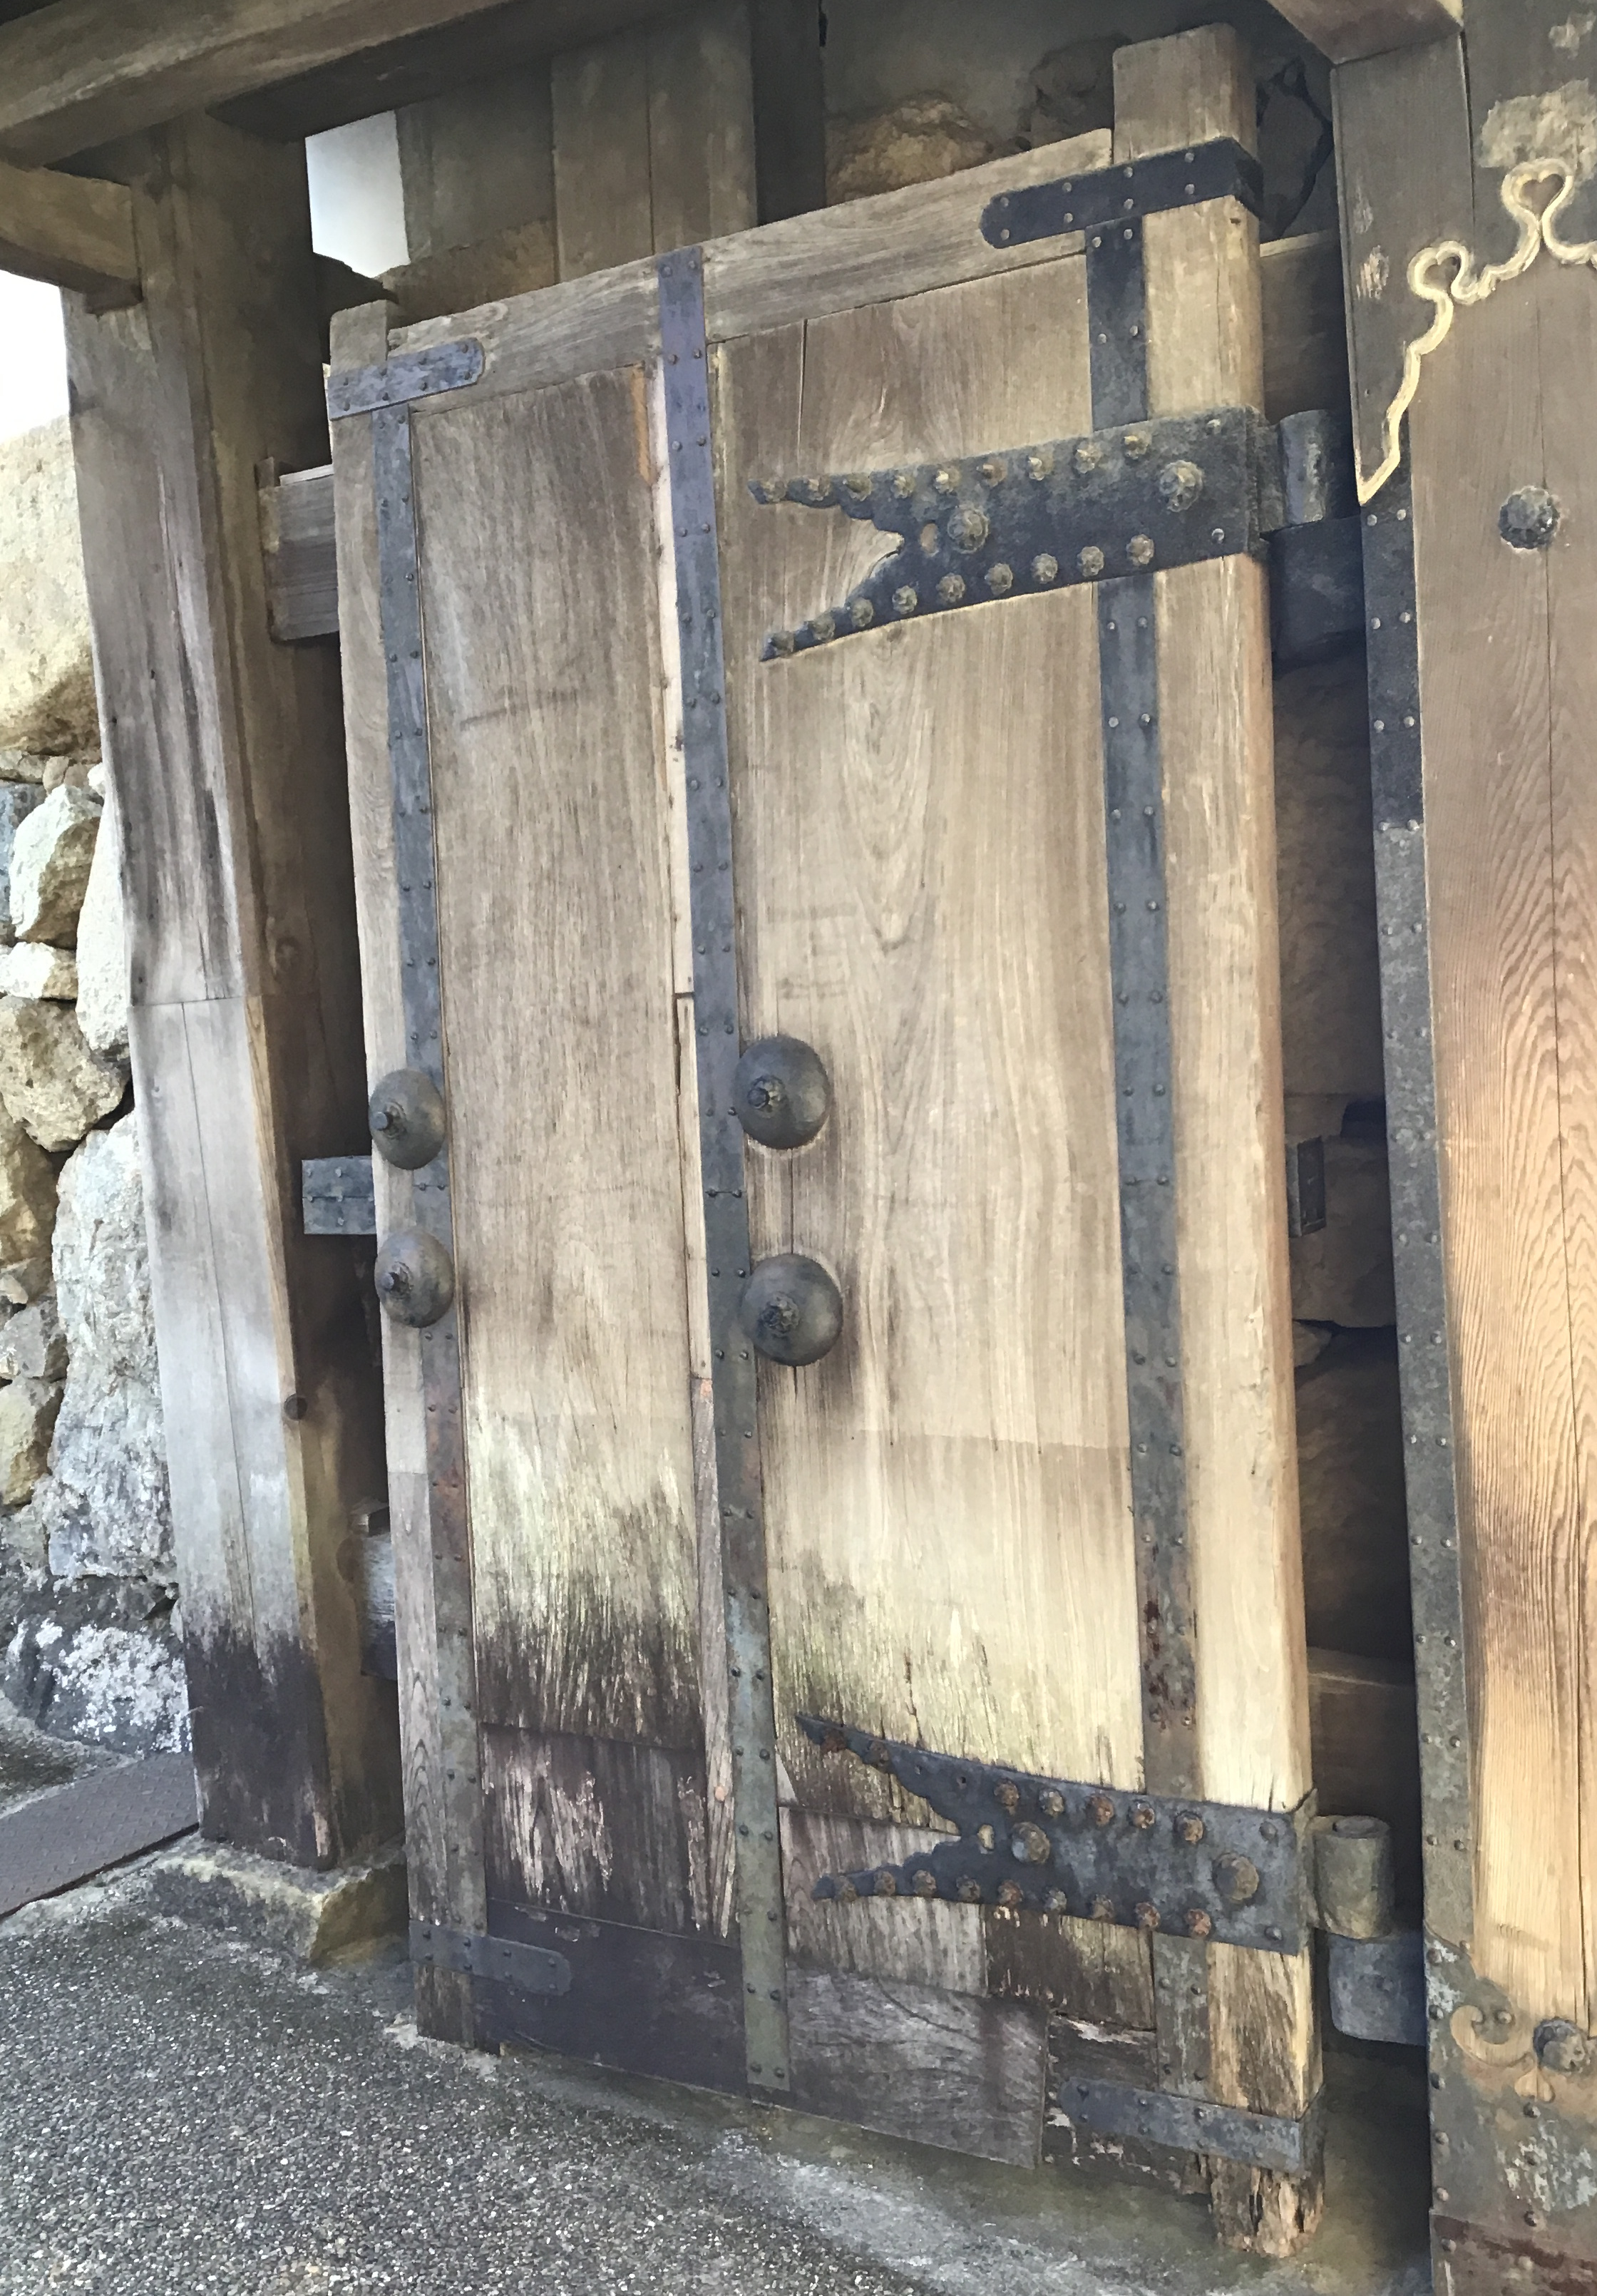 A reinforced door in Himeji Castle